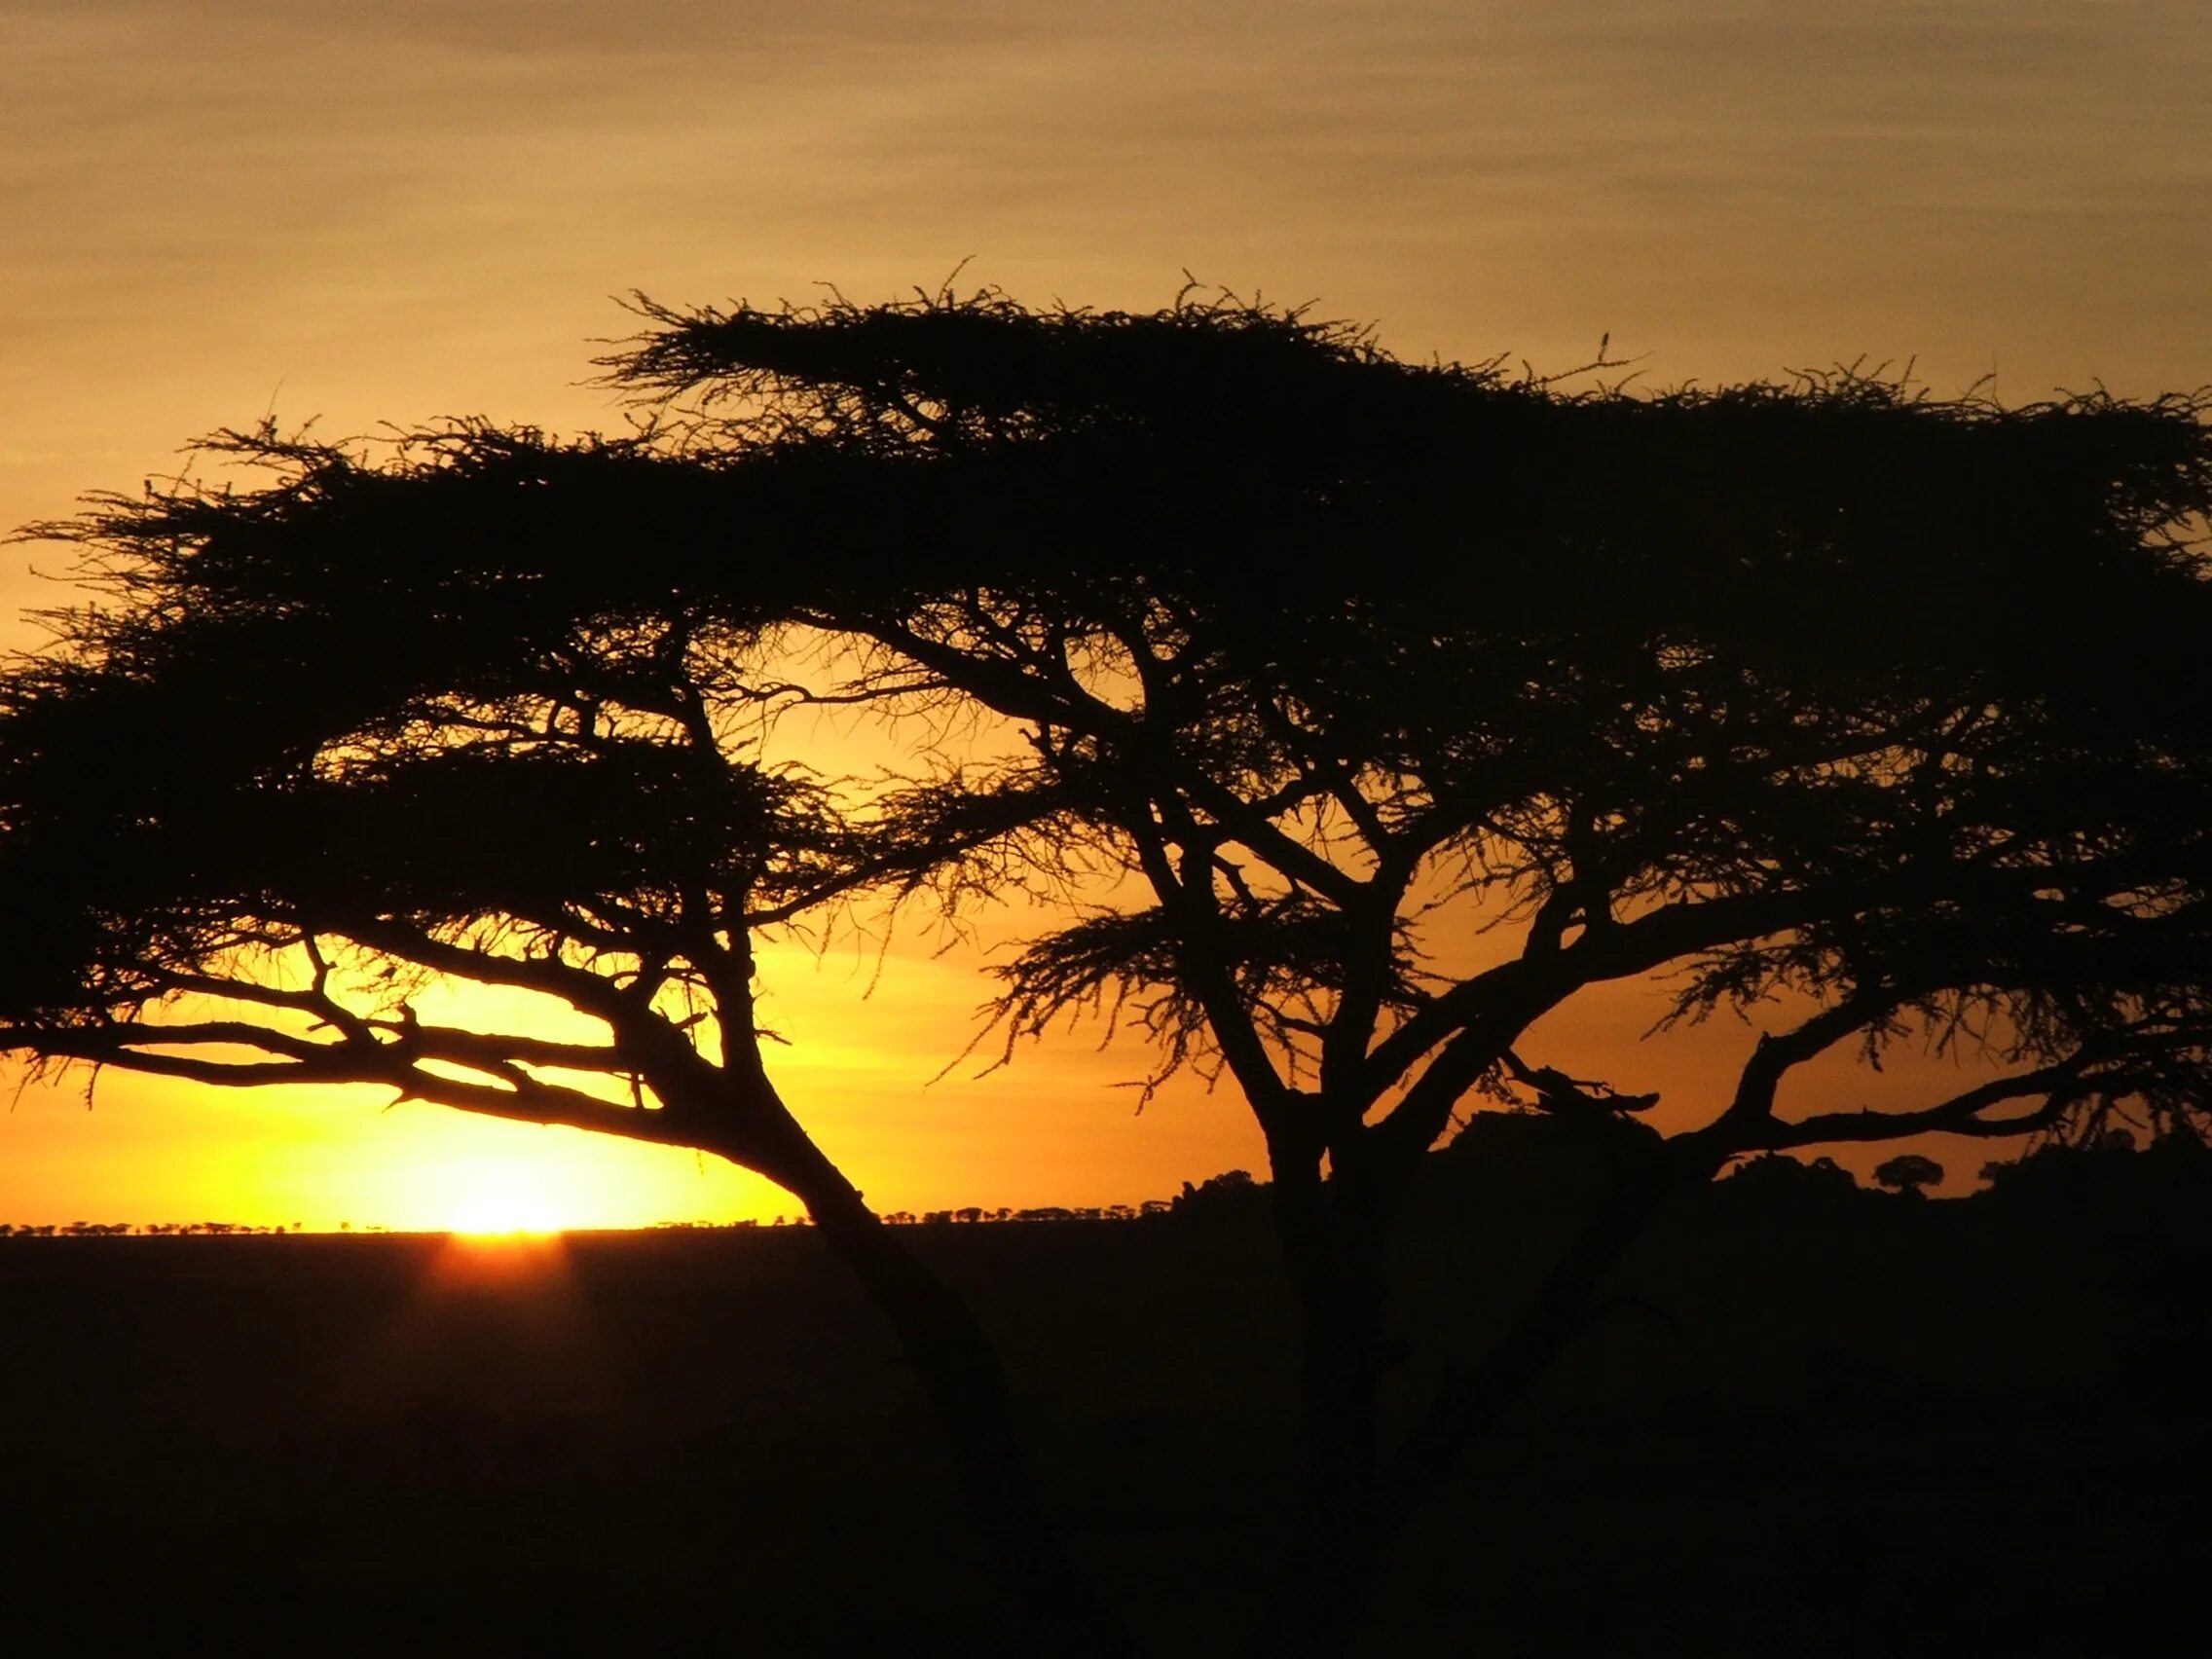 Саванной восточной африки. Кения Саванна. Саванна Восточной Африки. Саванны Эфиопии. Дерево Африка Саванна закат.